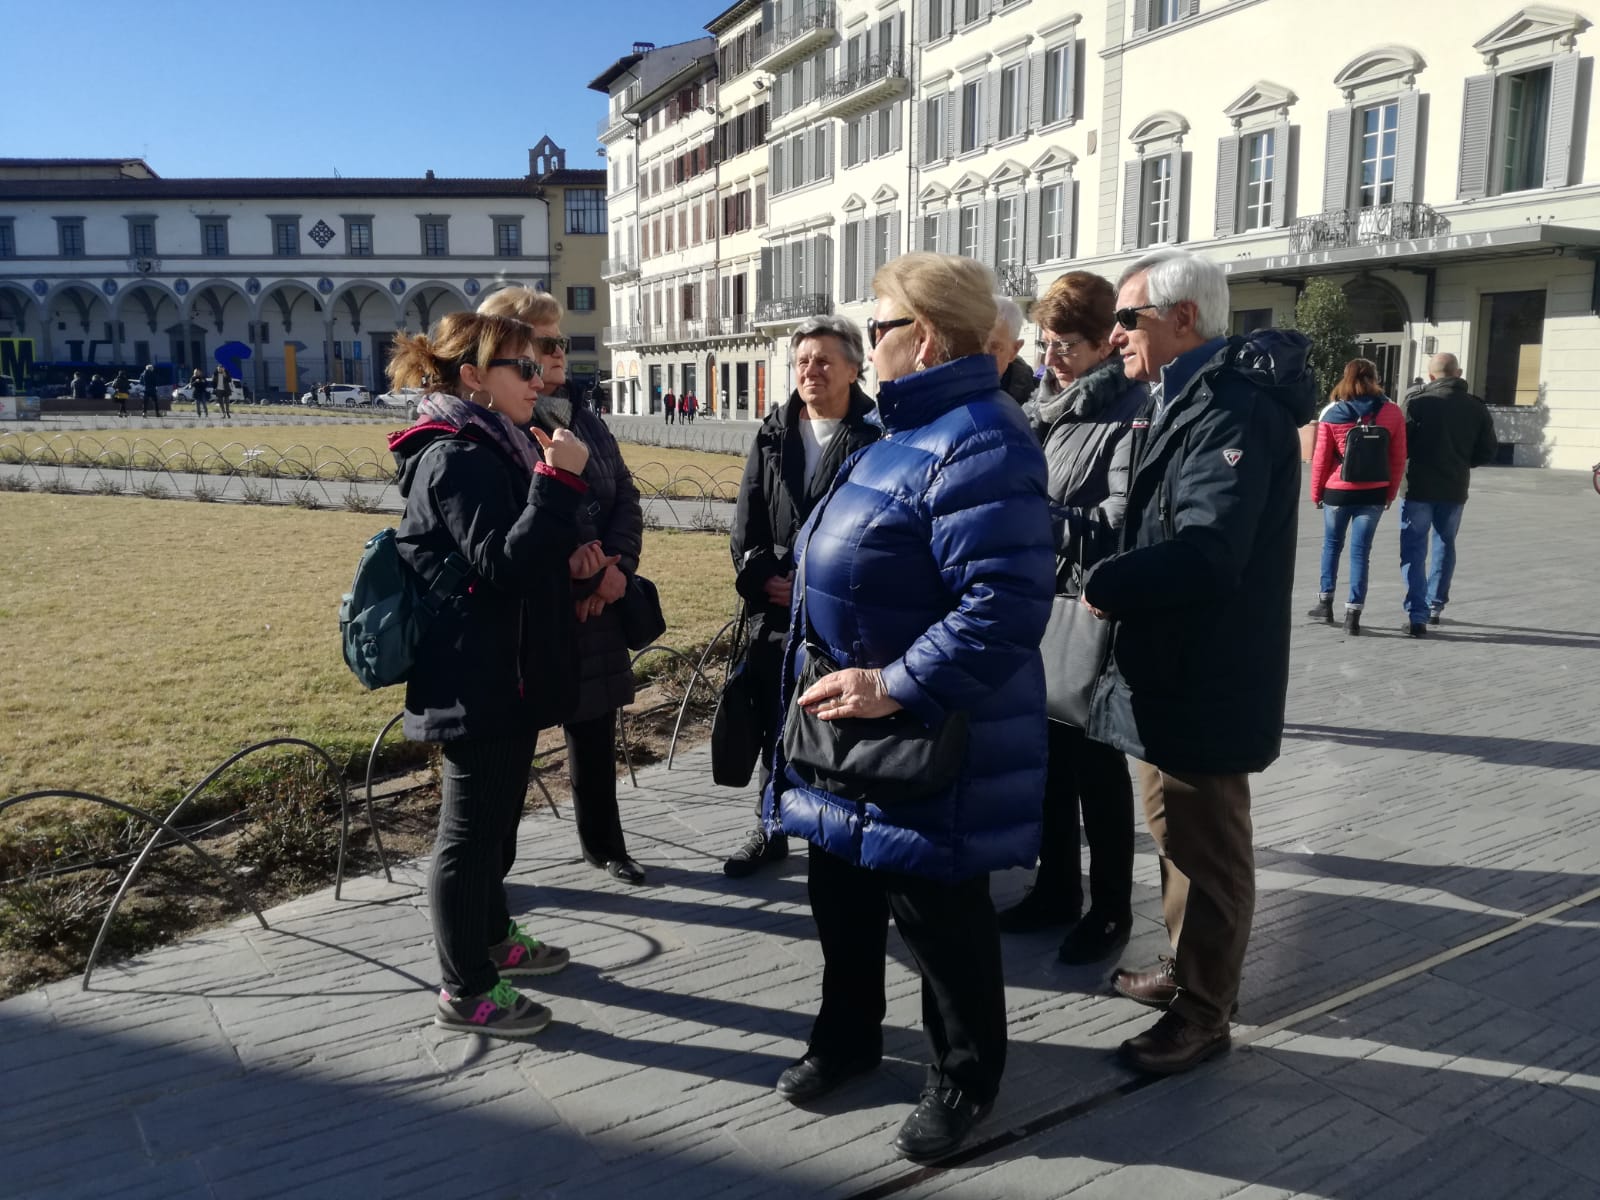 Francesca explains Piazza Santa Maria Novella 